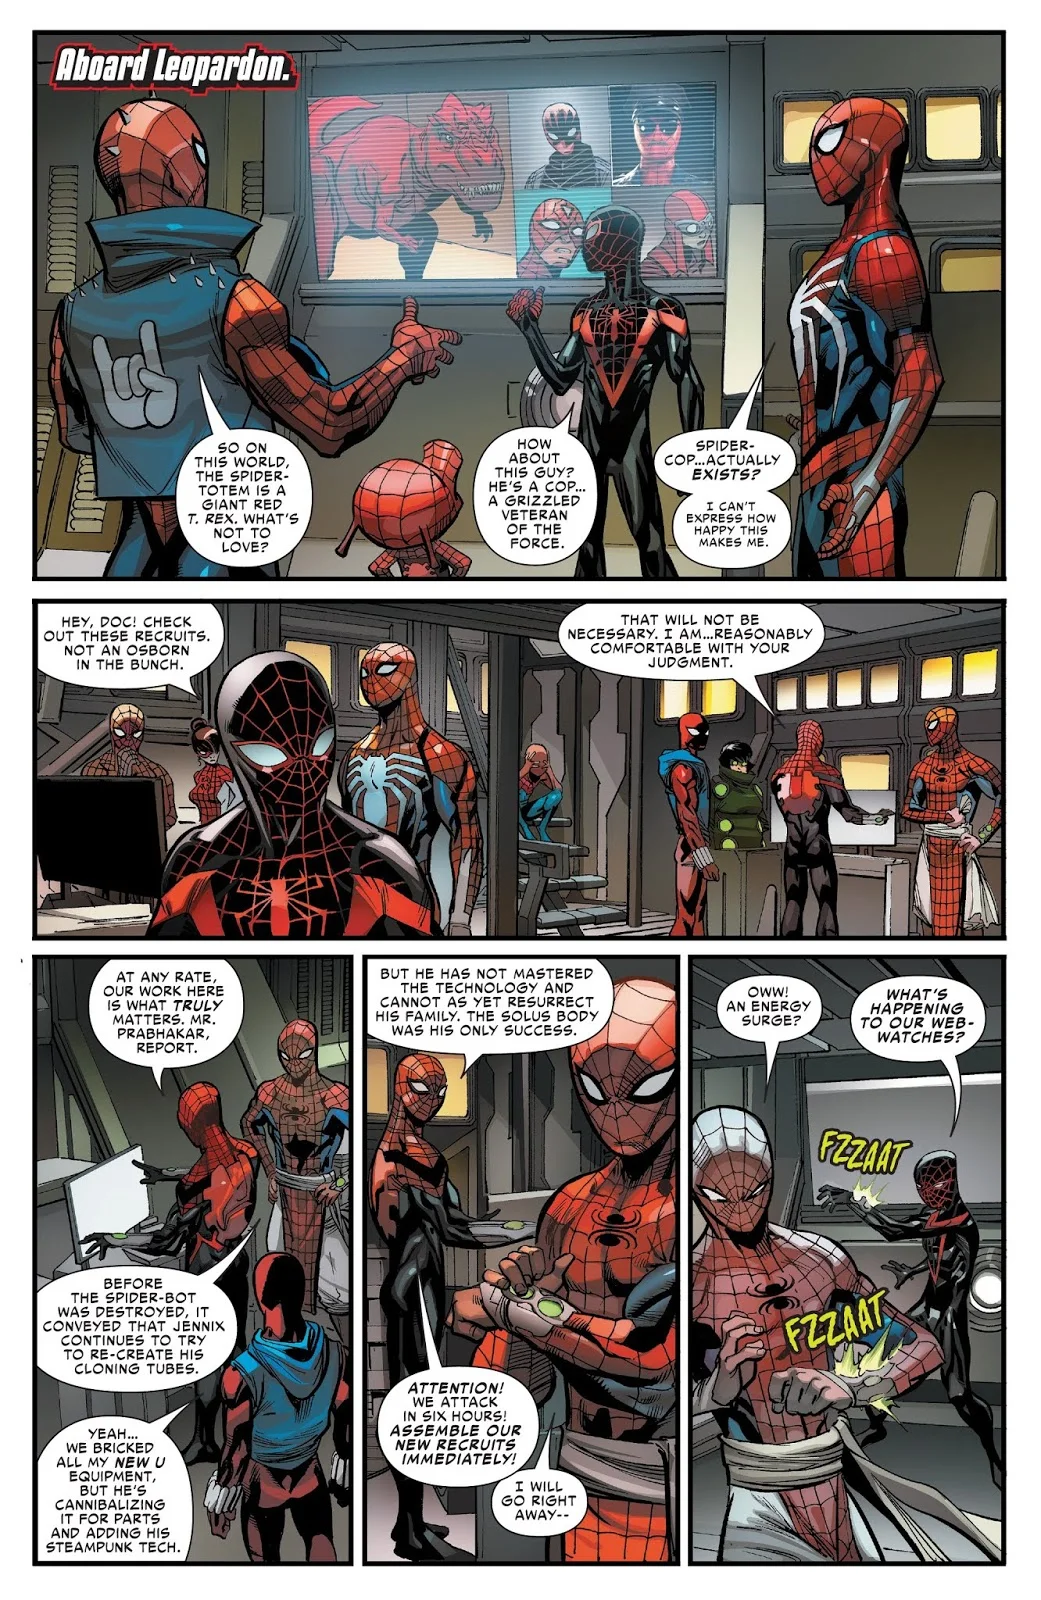 Коп-Паук из шутки Питера Паркера в Spider-Man для PS4 — теперь и на страницах комиксов Marvel - фото 2